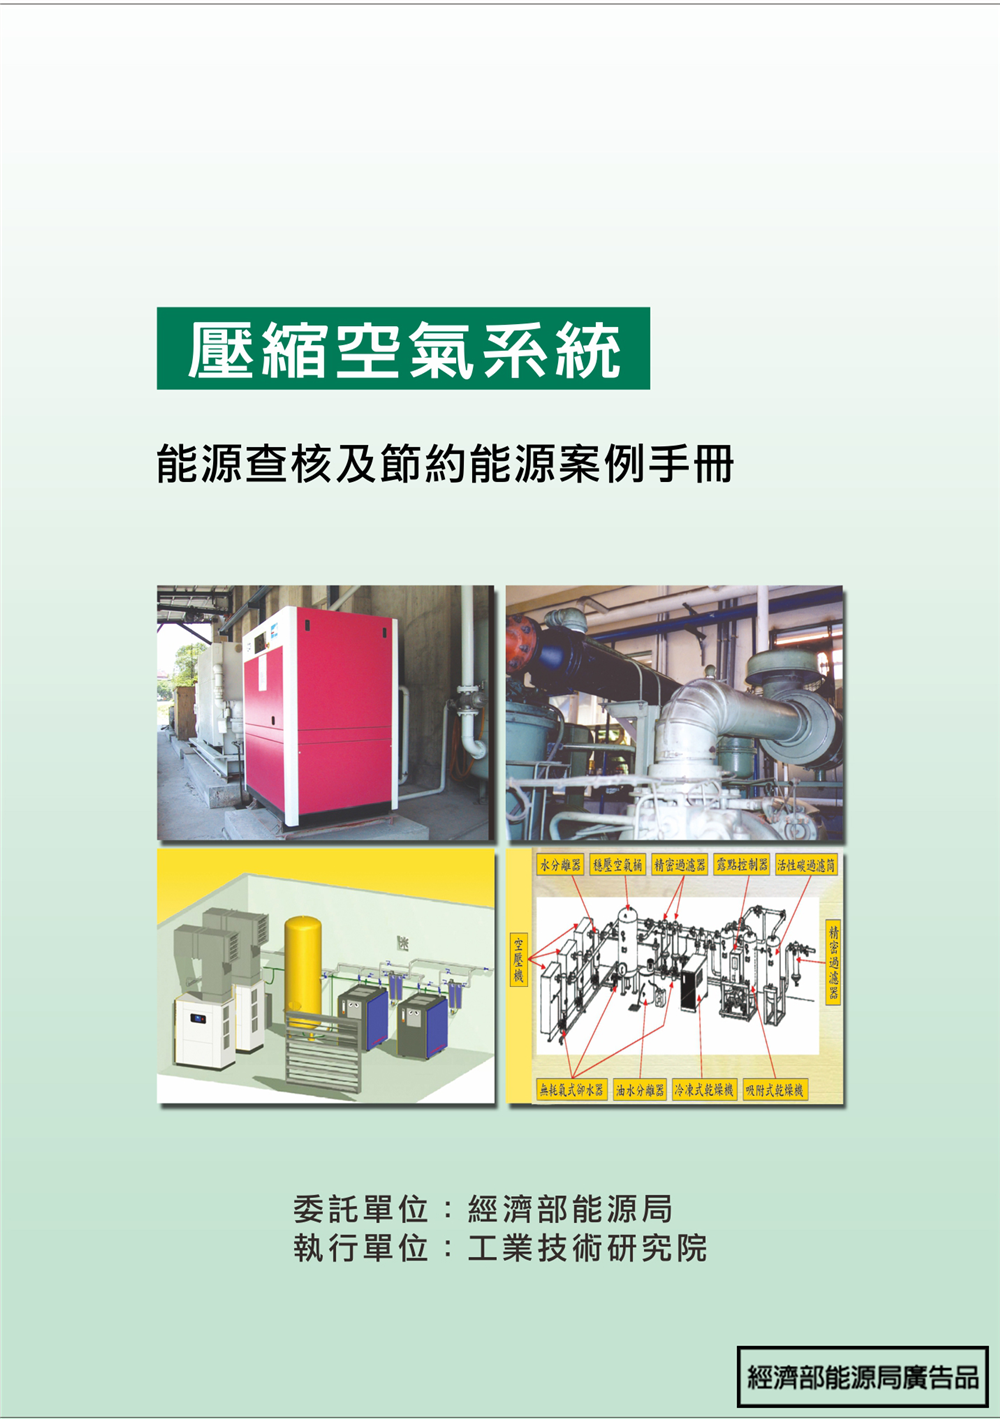 能源查核與節約能源案例手冊-壓縮空氣系統 的封面